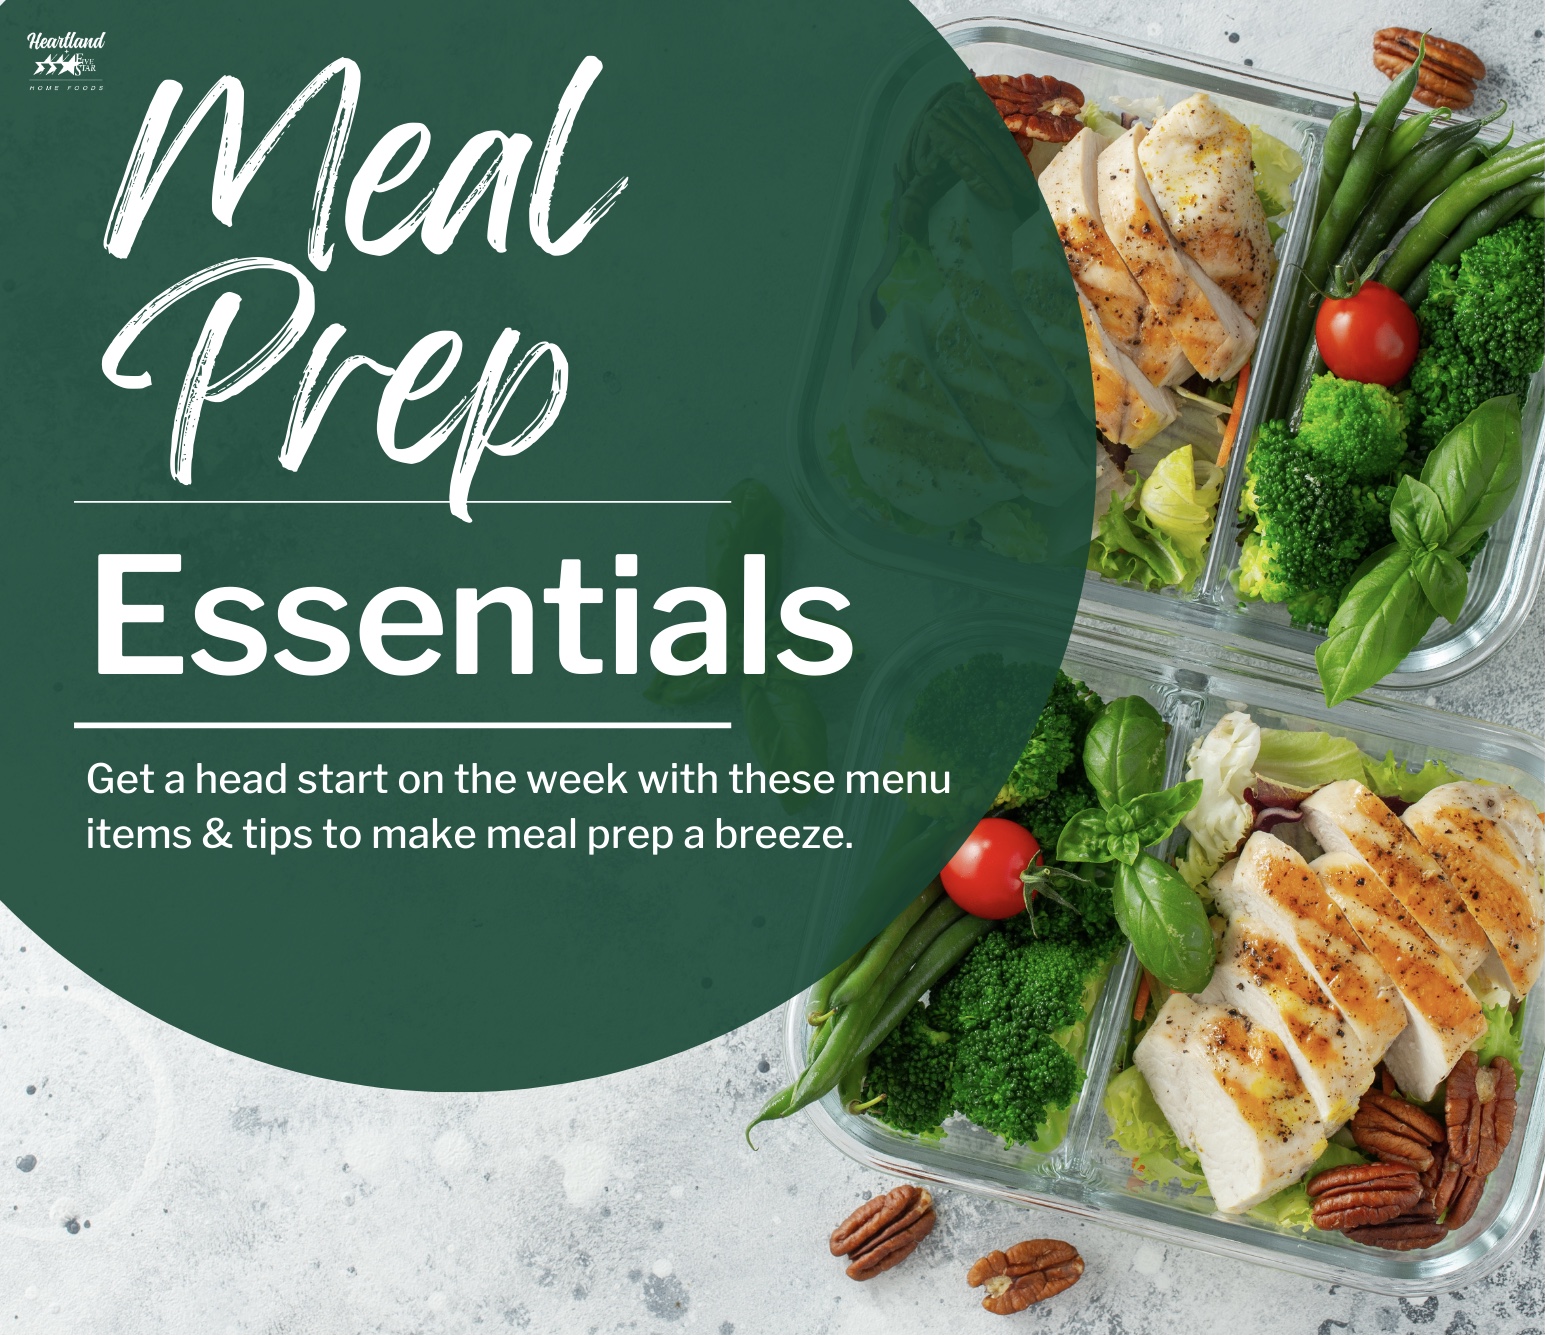 Meal Prep Essentials Guide - Heartland Foods